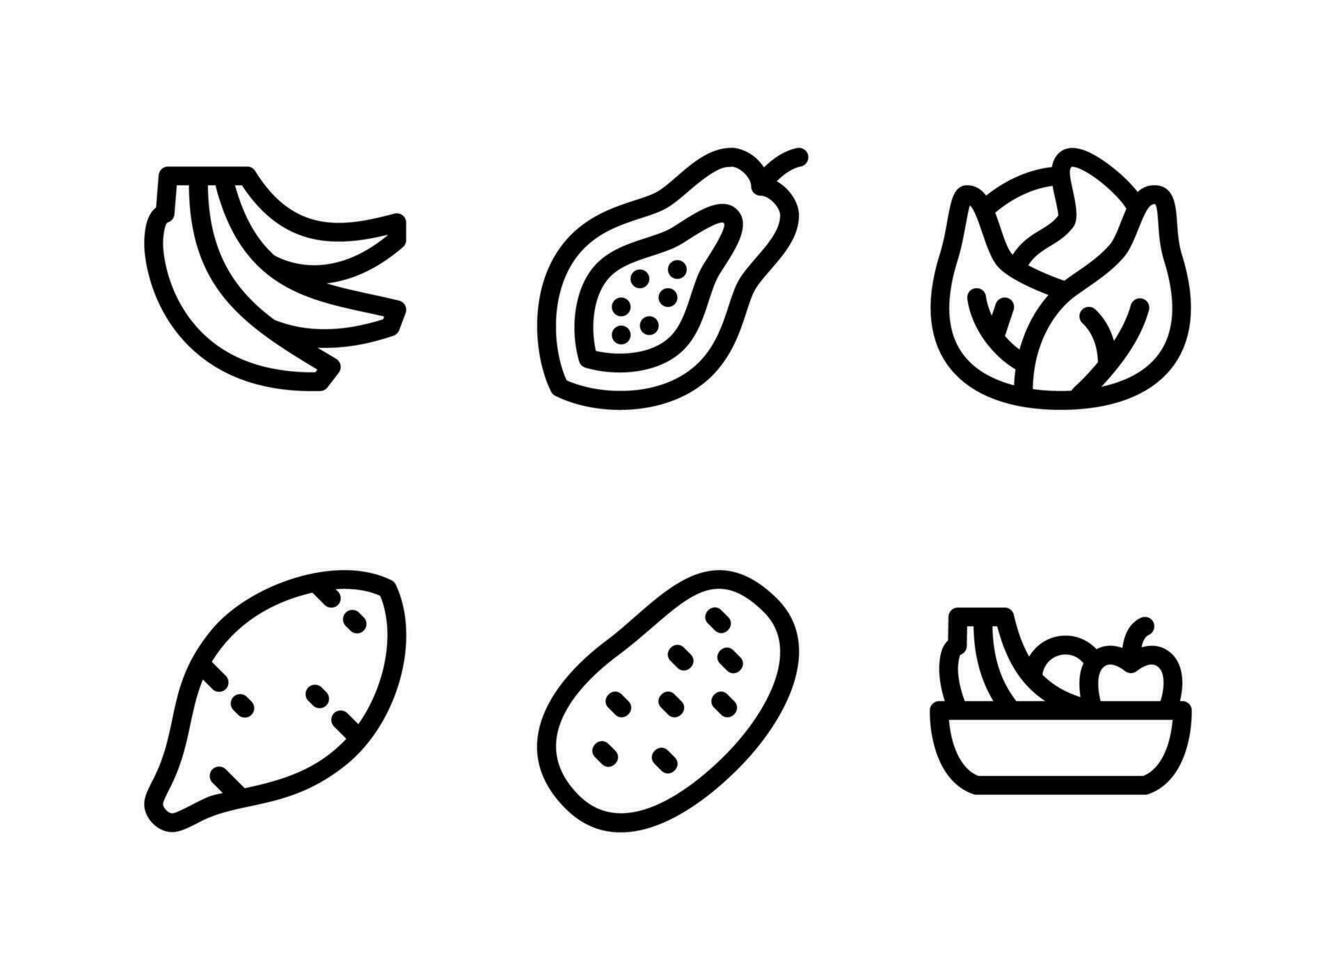 semplice set di icone di linee vettoriali relative a frutta e verdura